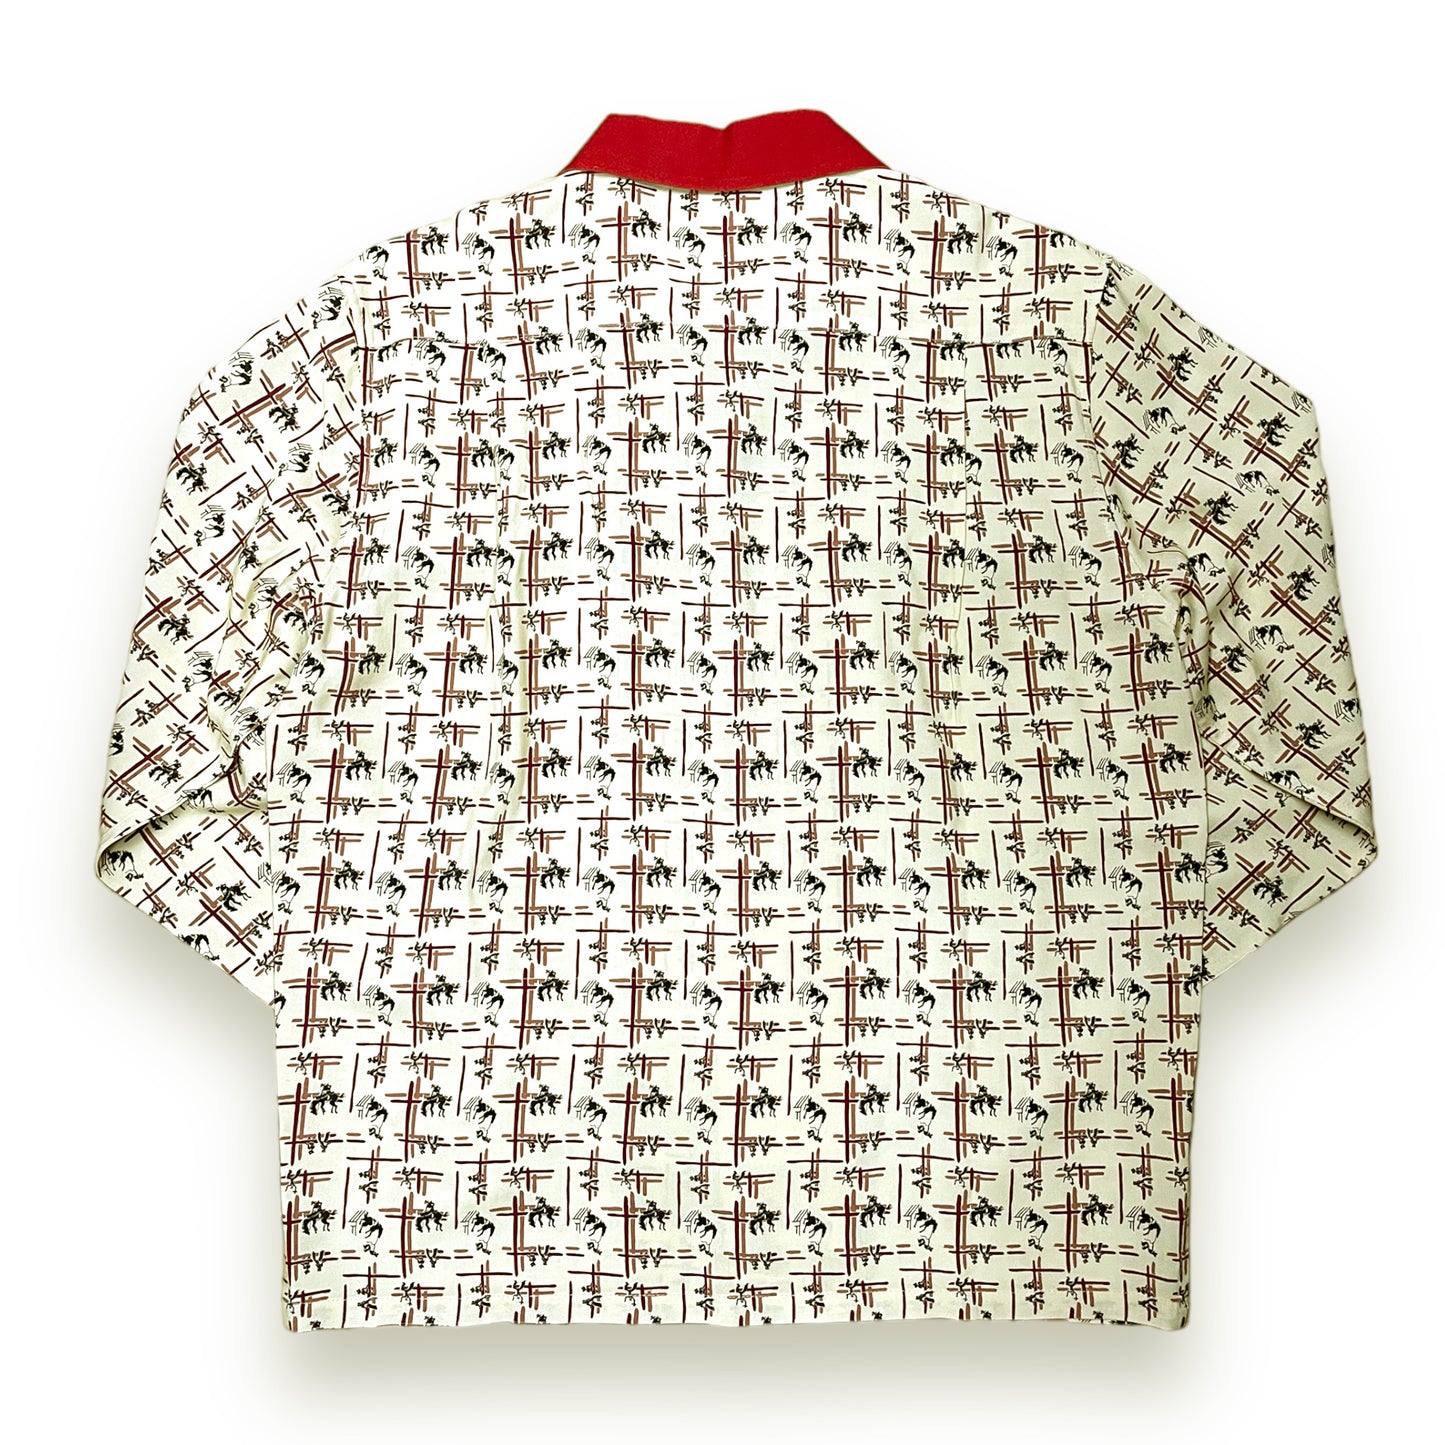 Long Sleeve Rayon Print Shirt「RODEO」/長袖レーヨンプリントシャツ「ロデオ」